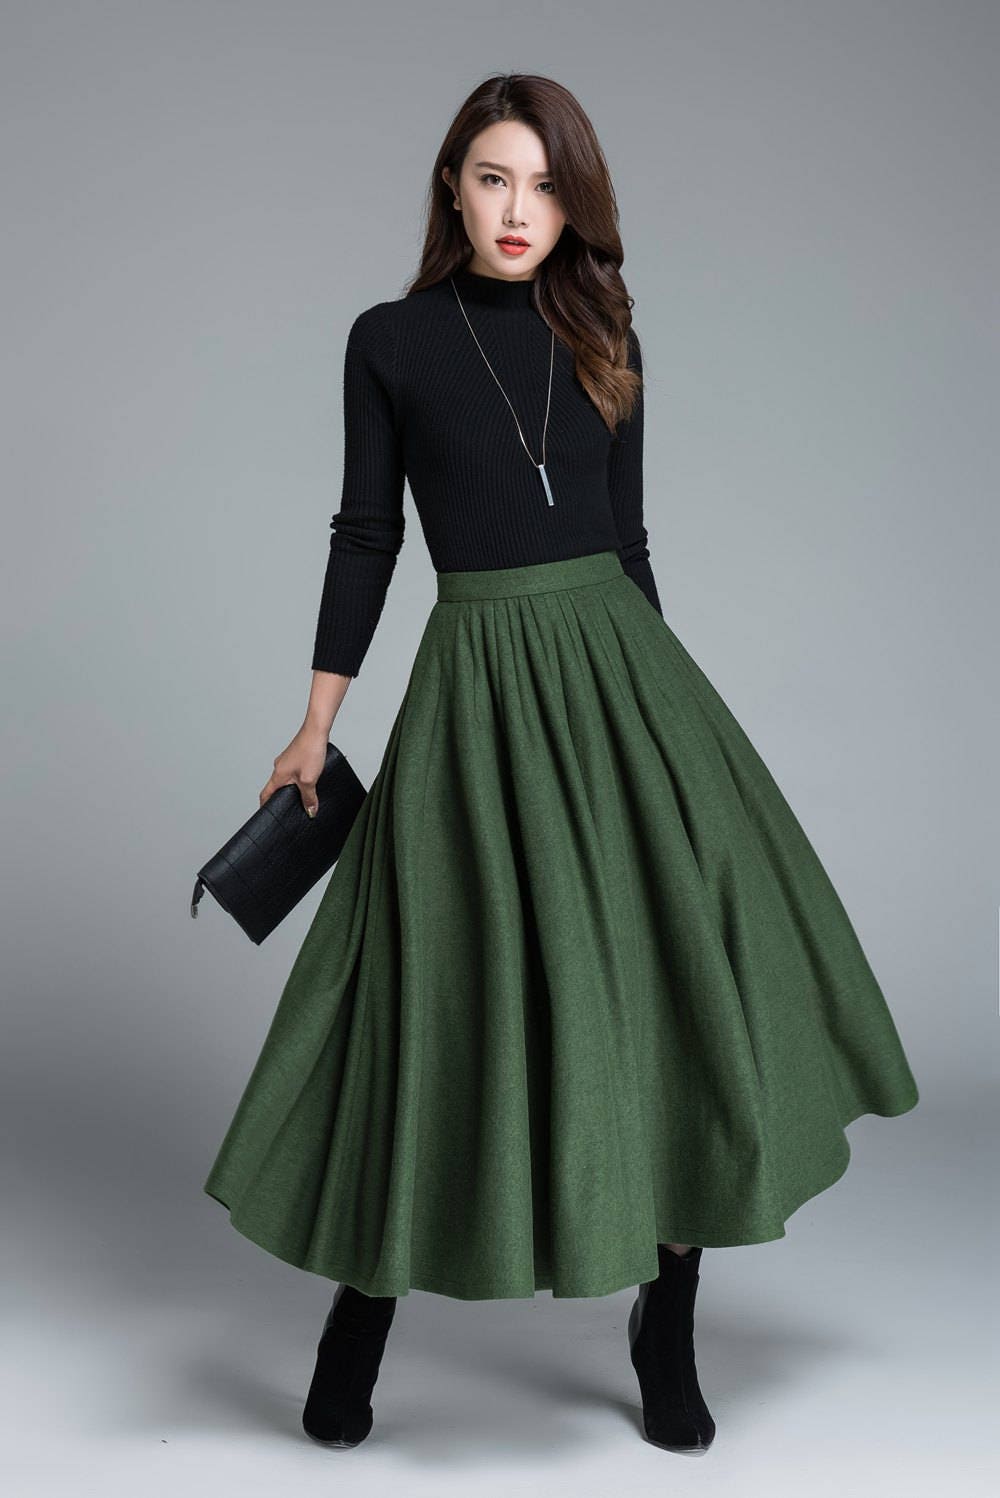 green wool skirt winter skirt pleated skirt full skirt | Etsy